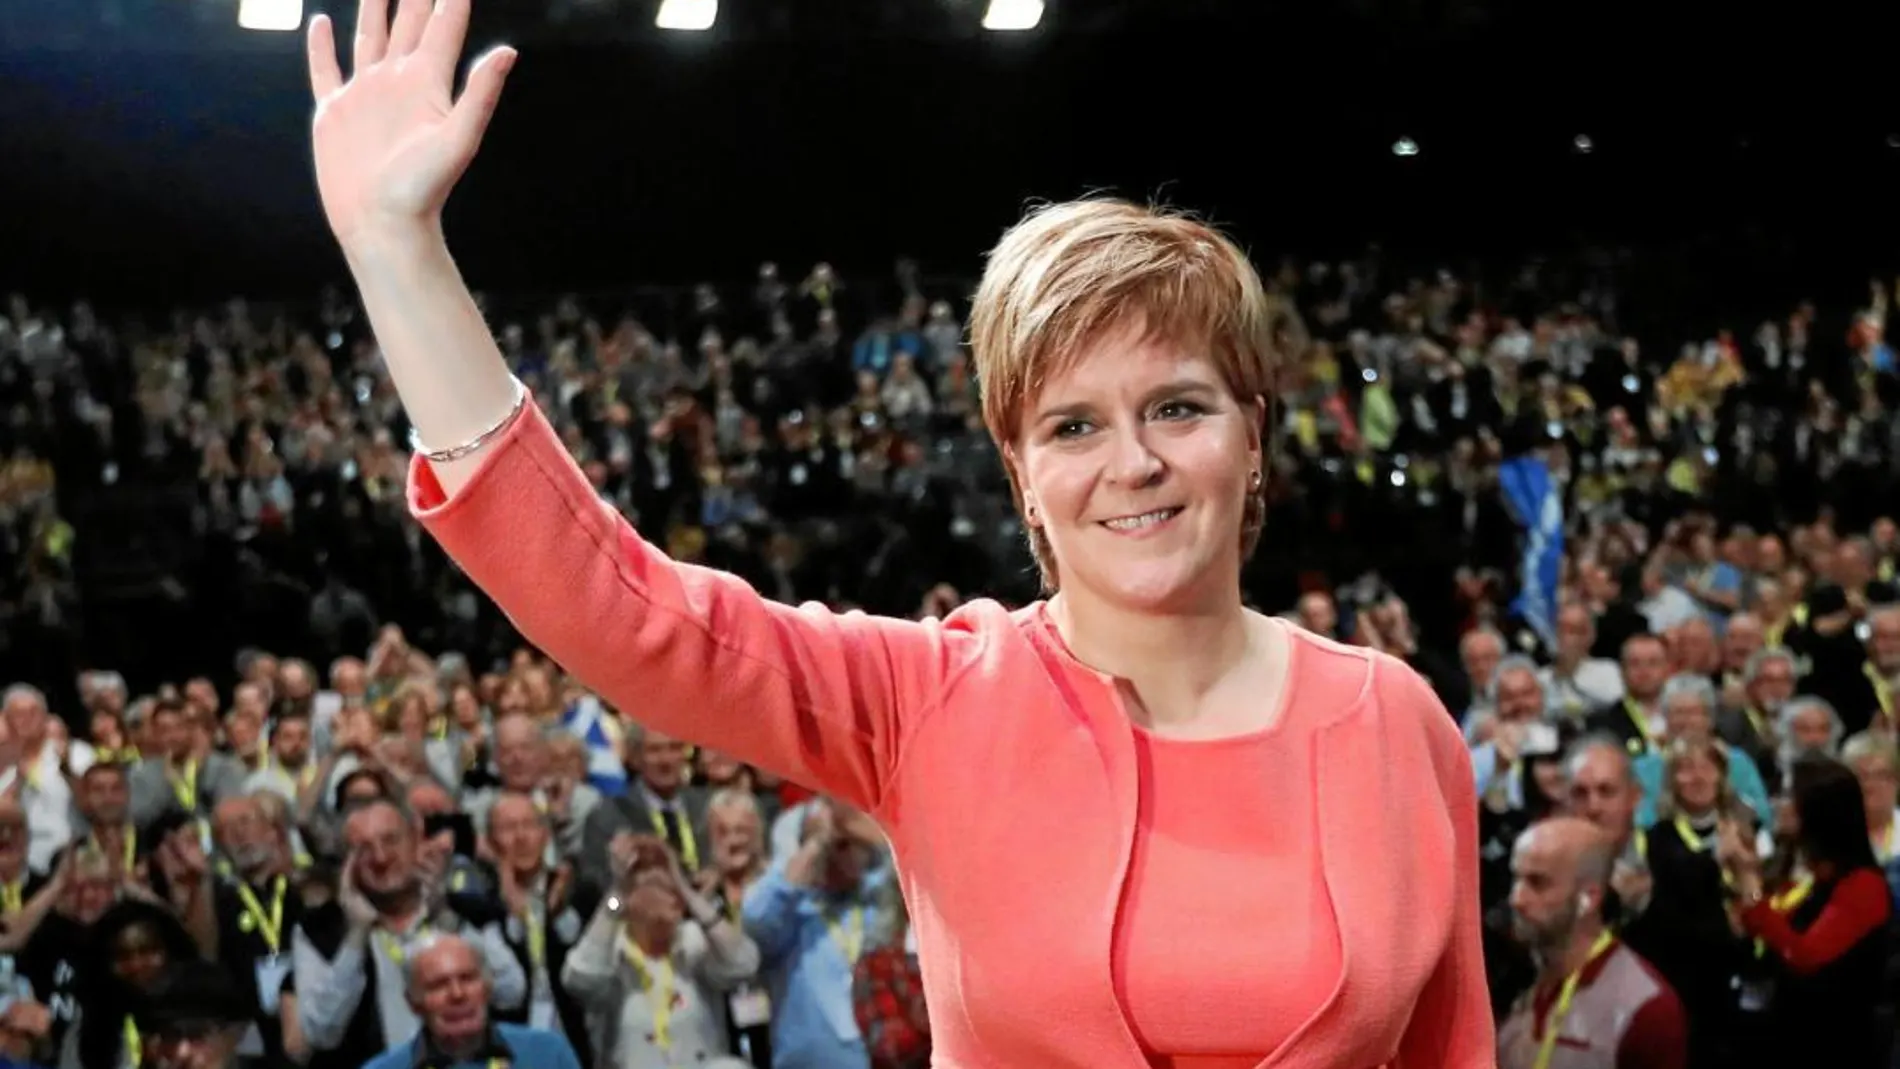 La nacionalista Nicola Sturgeon tras su discurso de ayer en Glasgow / Reuters